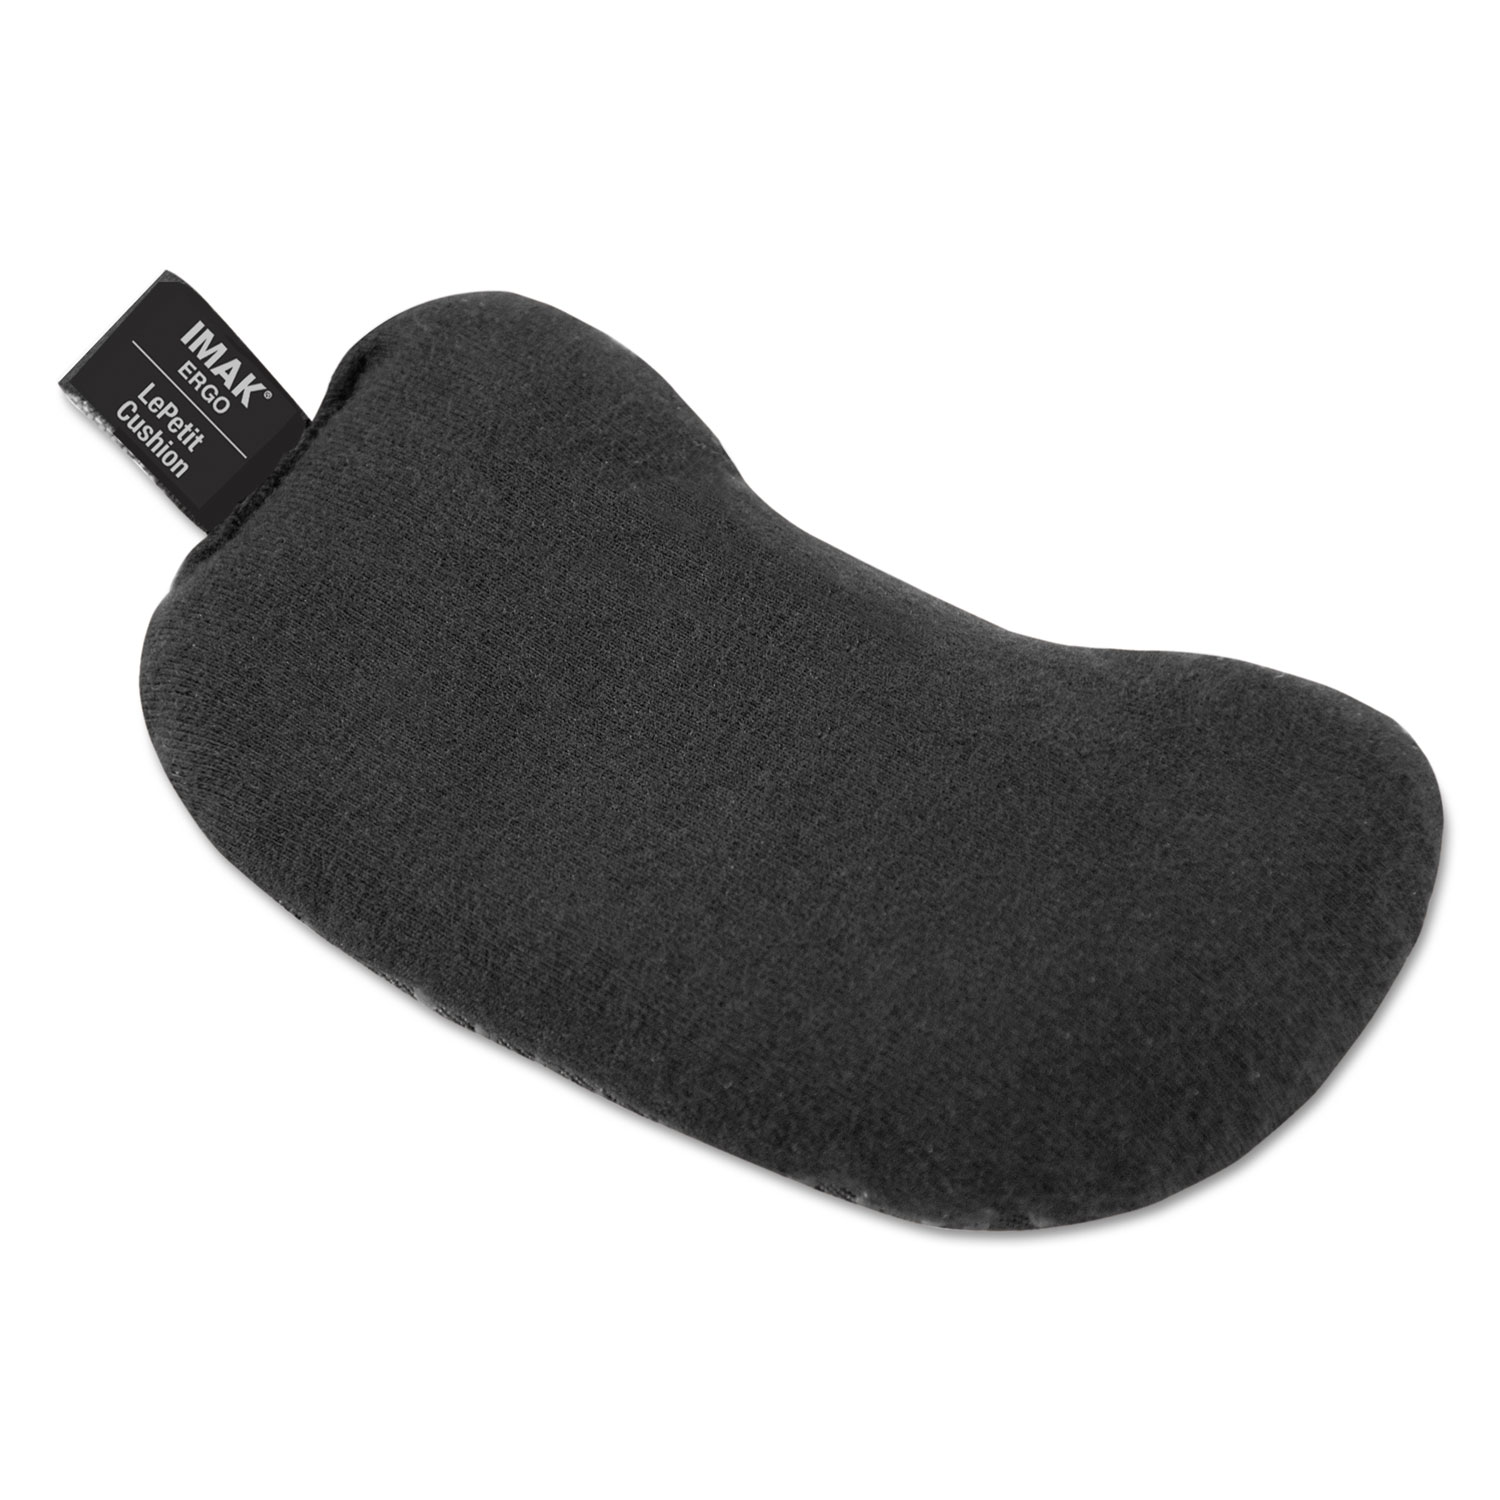  IMAK Ergo A20212 Le Petit Mouse Wrist Cushion, Black (IMAA20212) 